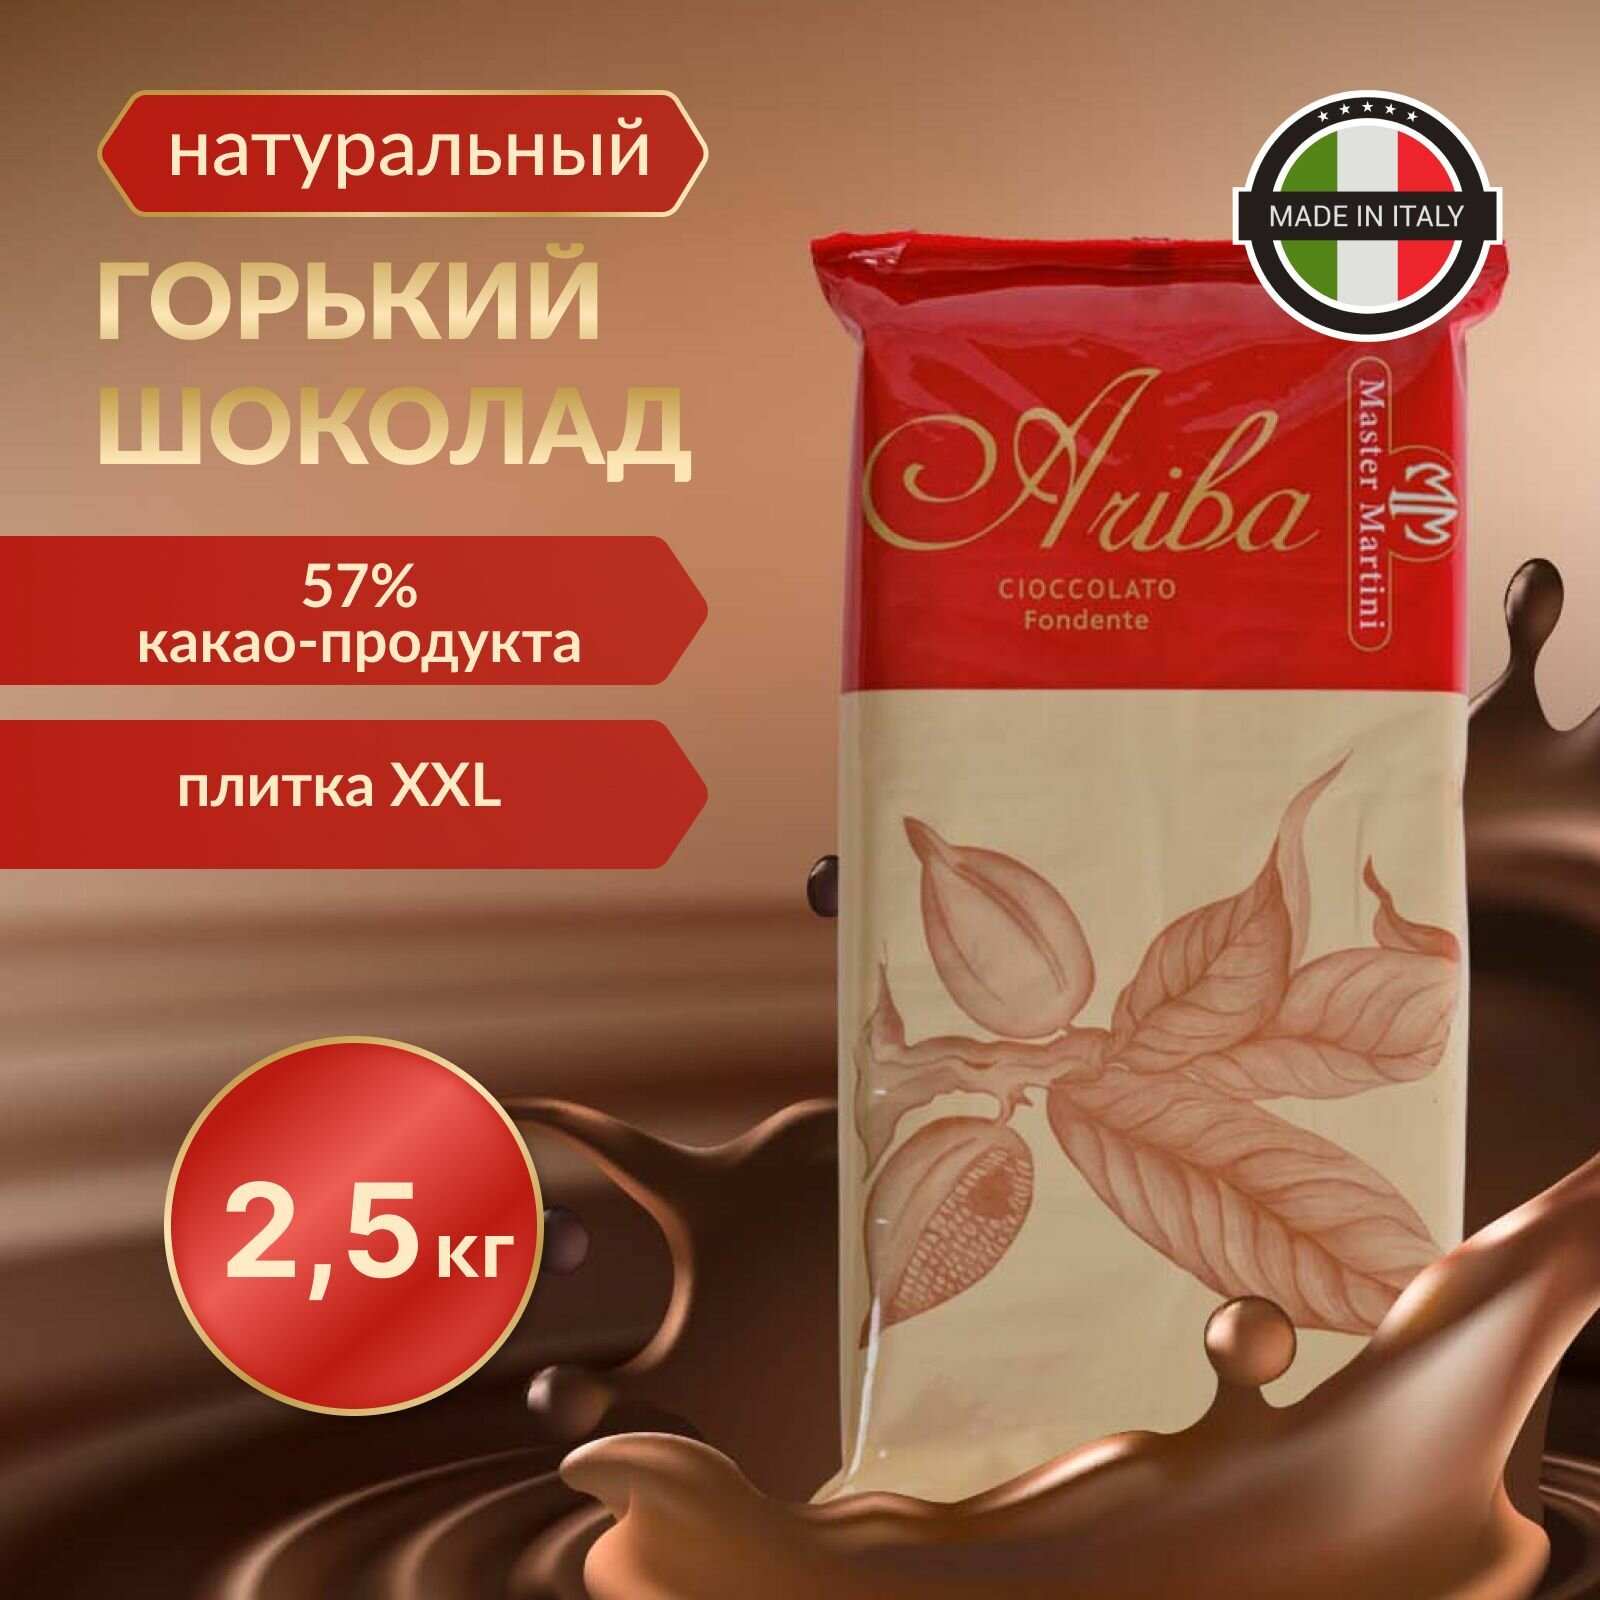 Темный шоколад Ariba Fondente Pani 57 в подарок, плитка 2,5 кг. Термоупаковка